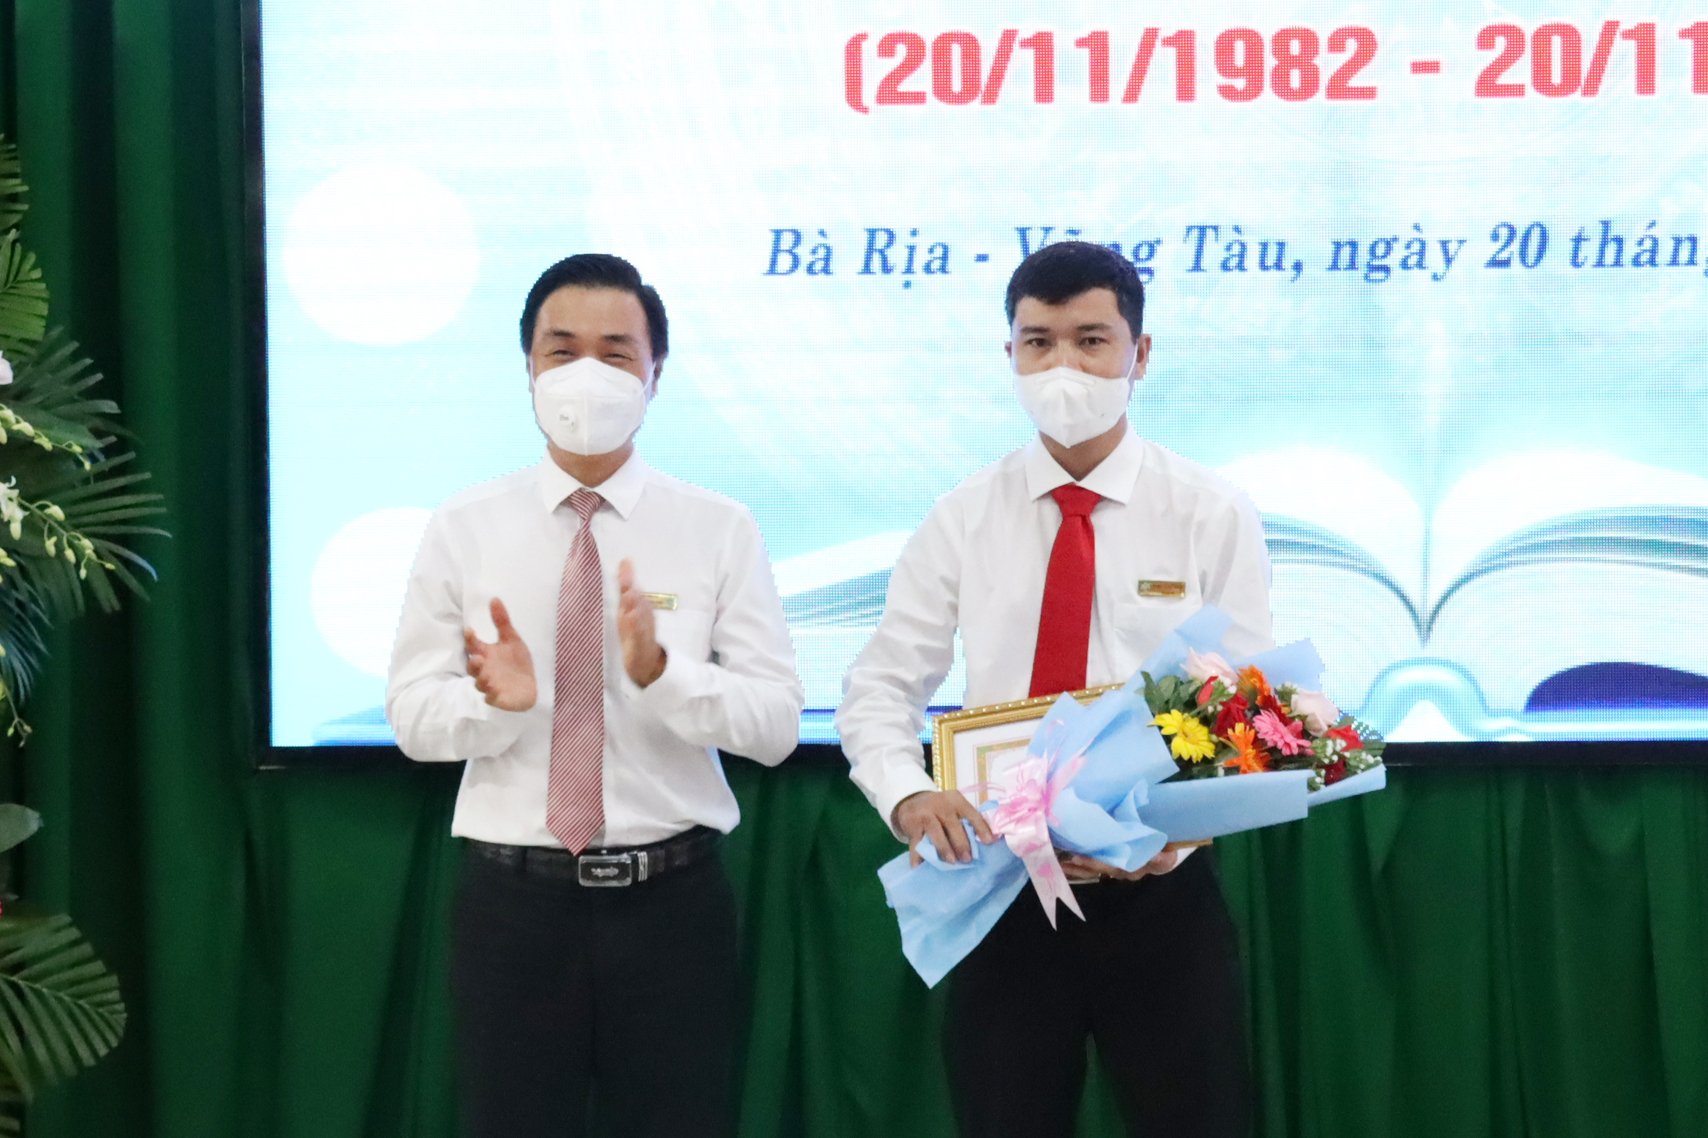 Ông Ngô Xuân Khoát, Bí thư Đảng ủy, Chủ tịch Hội đồng trường trao Giấy khen cho thầy Nguyễn Thanh Thảo, nhà giáo vừa đạt giải Nhất Hội giảng Nhà giáo Giáo dục nghề nghiệp năm 2021.